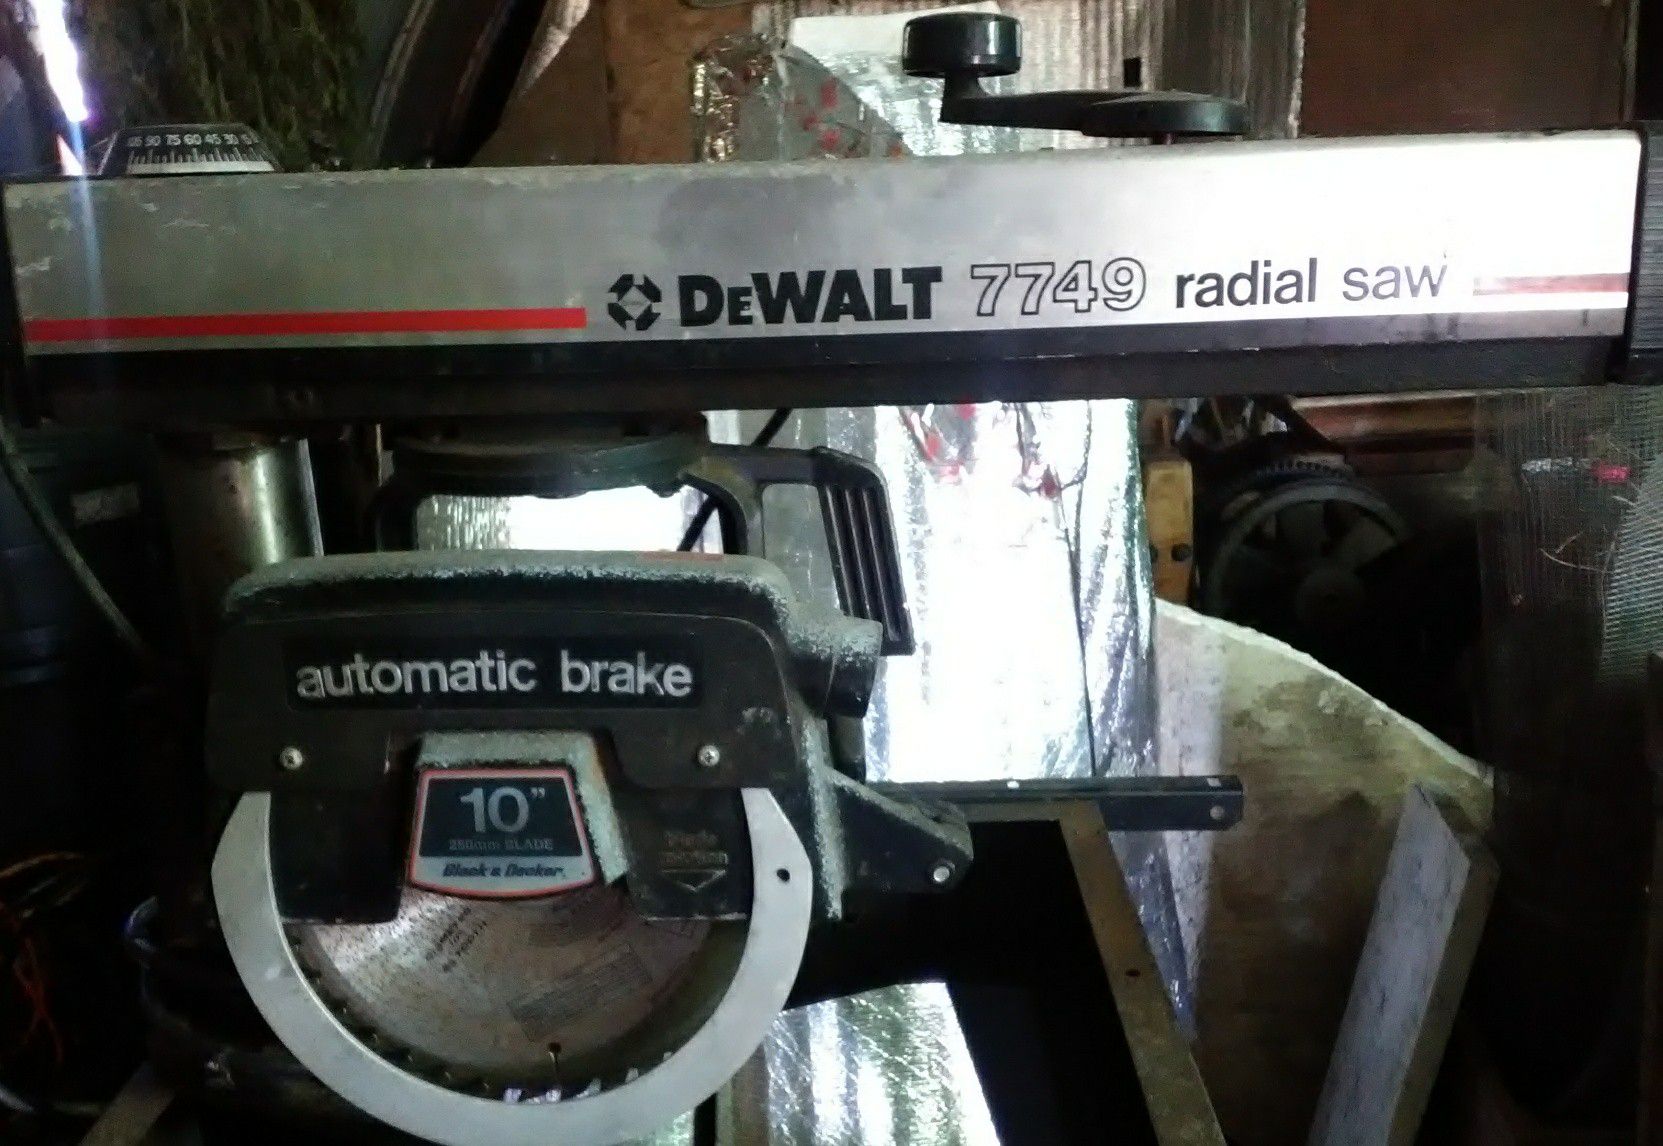 DeWalt 7749 radial arm saw